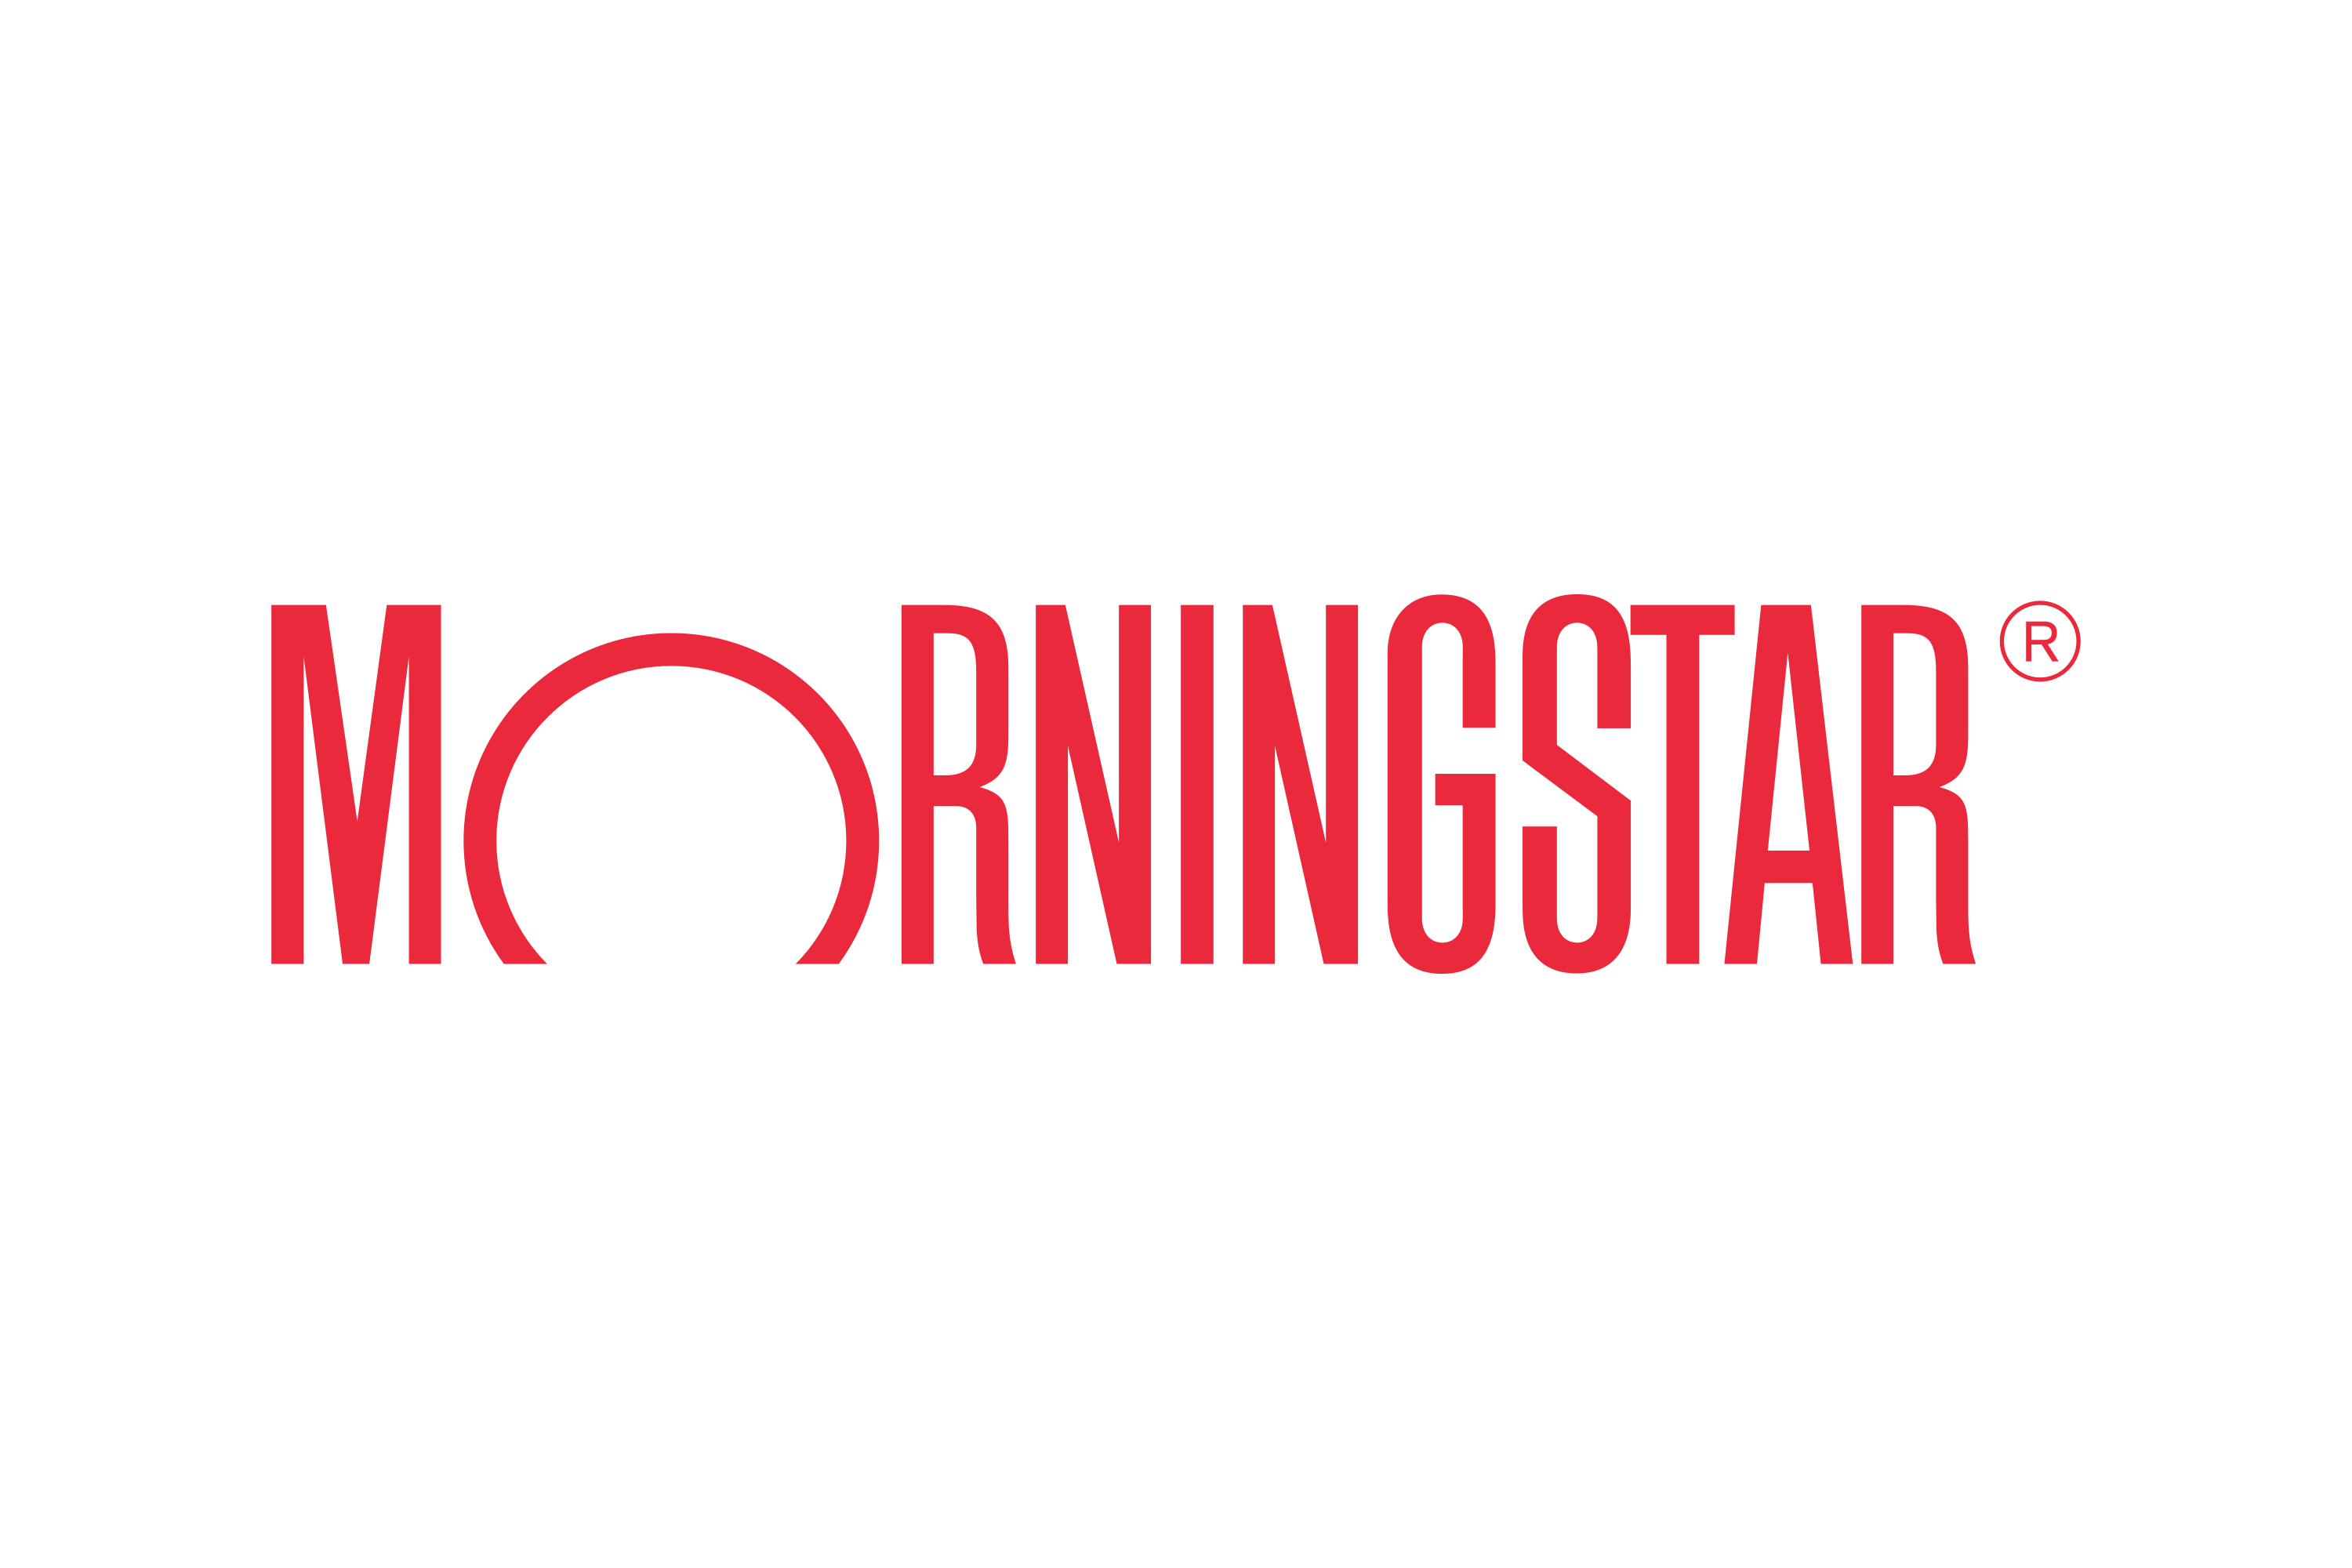 Download Morningstar, Inc. Logo in SVG Vector or PNG File Format - Logo ...